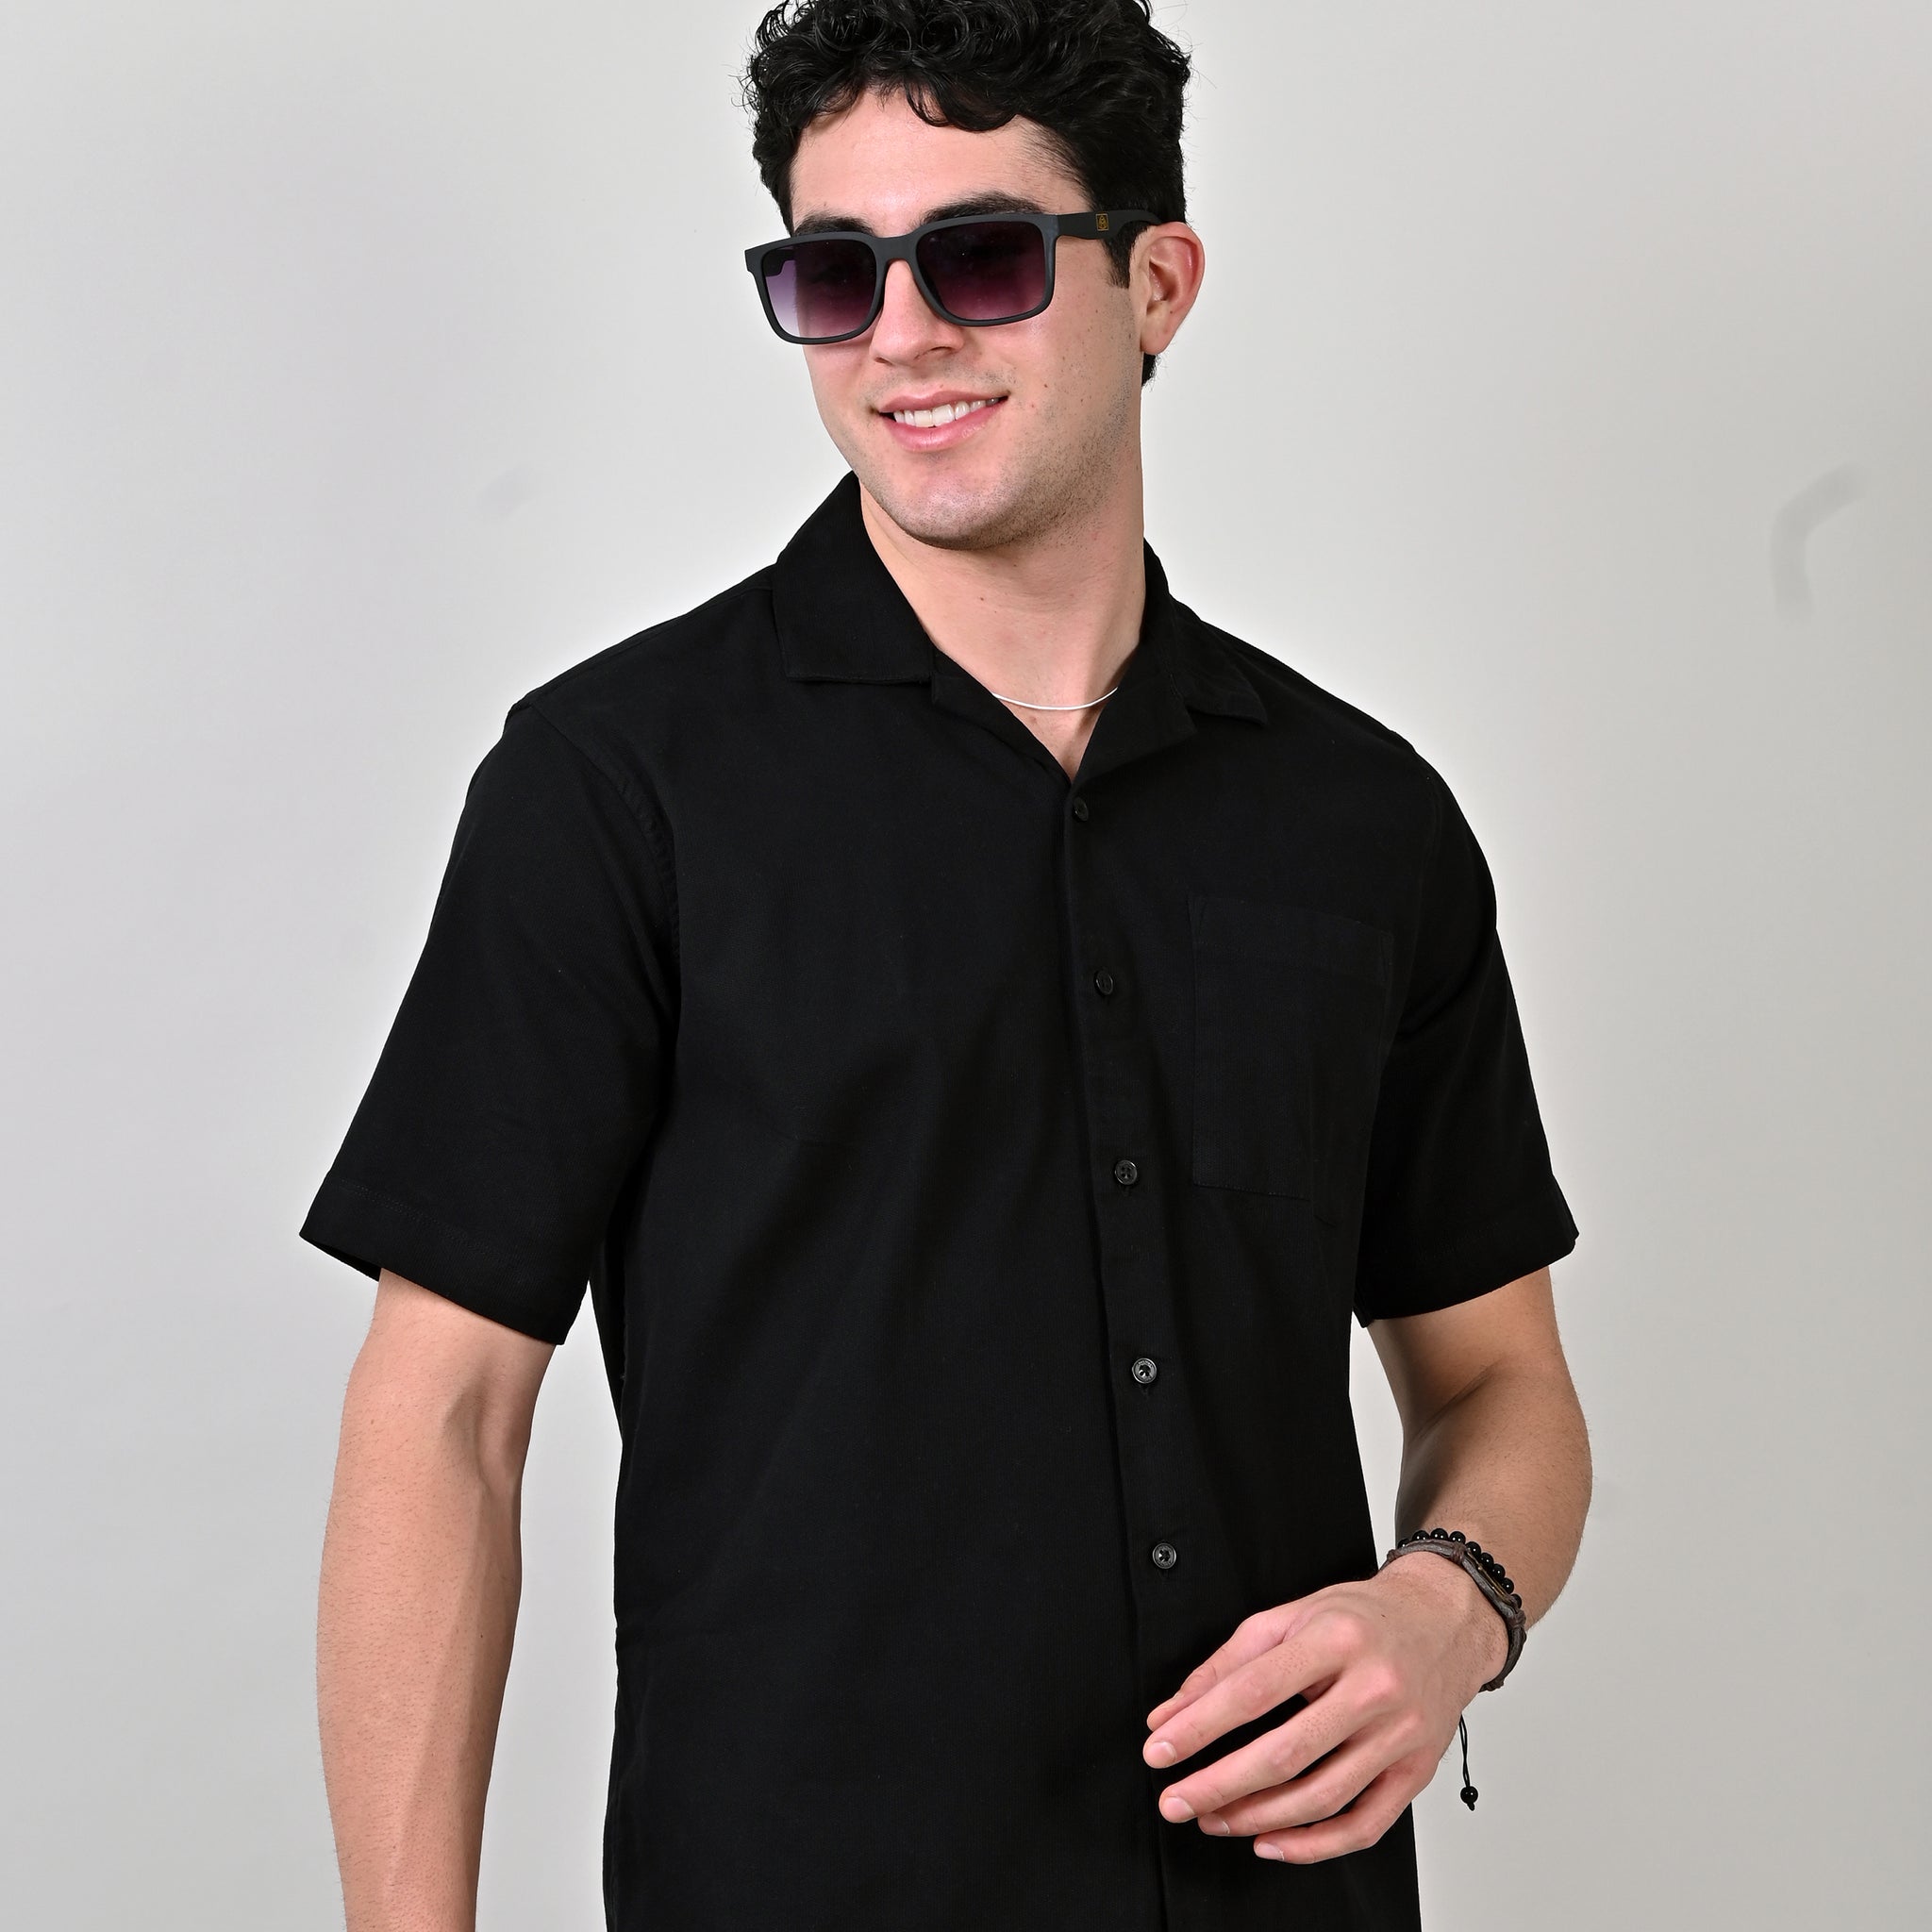 Dobby Plain Half Sleeve Black Shirt